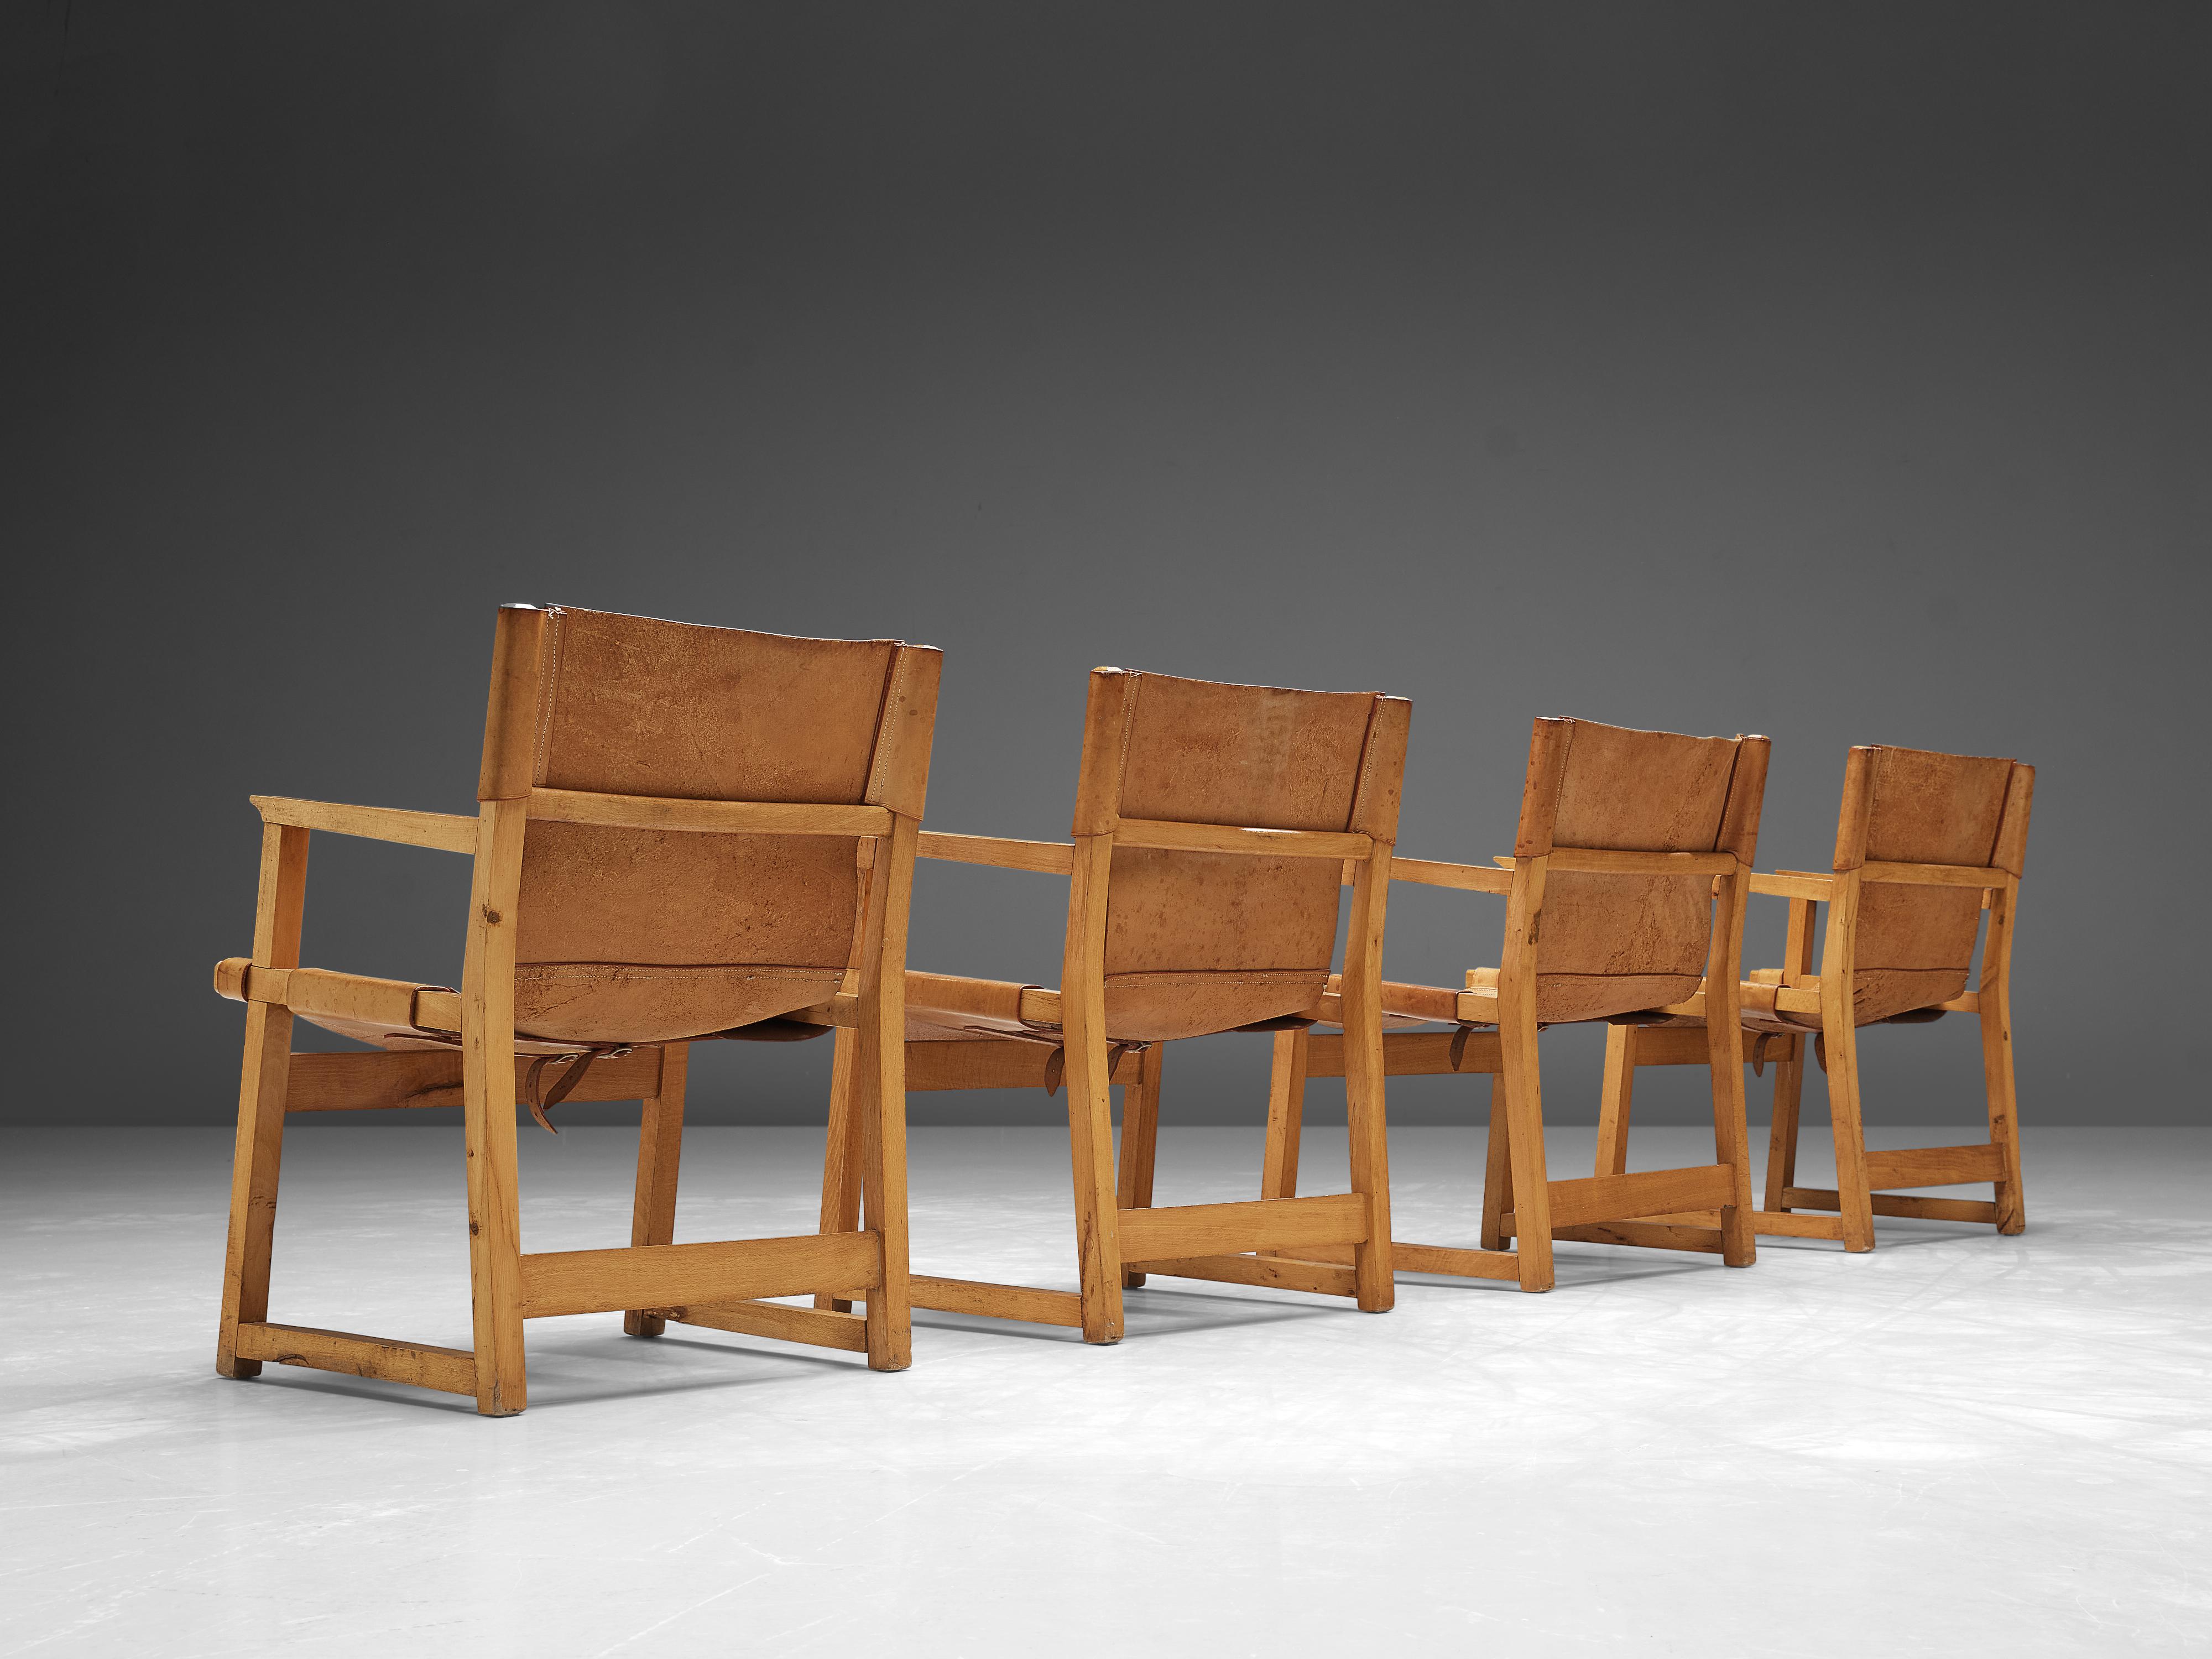 Paco Muñoz, Satz von vier Sesseln, Leder, Buche, Spanien, 1950er Jahre

Safari- oder 'Riaza'-Sessel des spanischen Designers Paco Muñoz aus der Jahrhundertmitte. Diese Stühle sind aus hochwertigem Sattelleder mit abnehmbaren Schnallen unter der